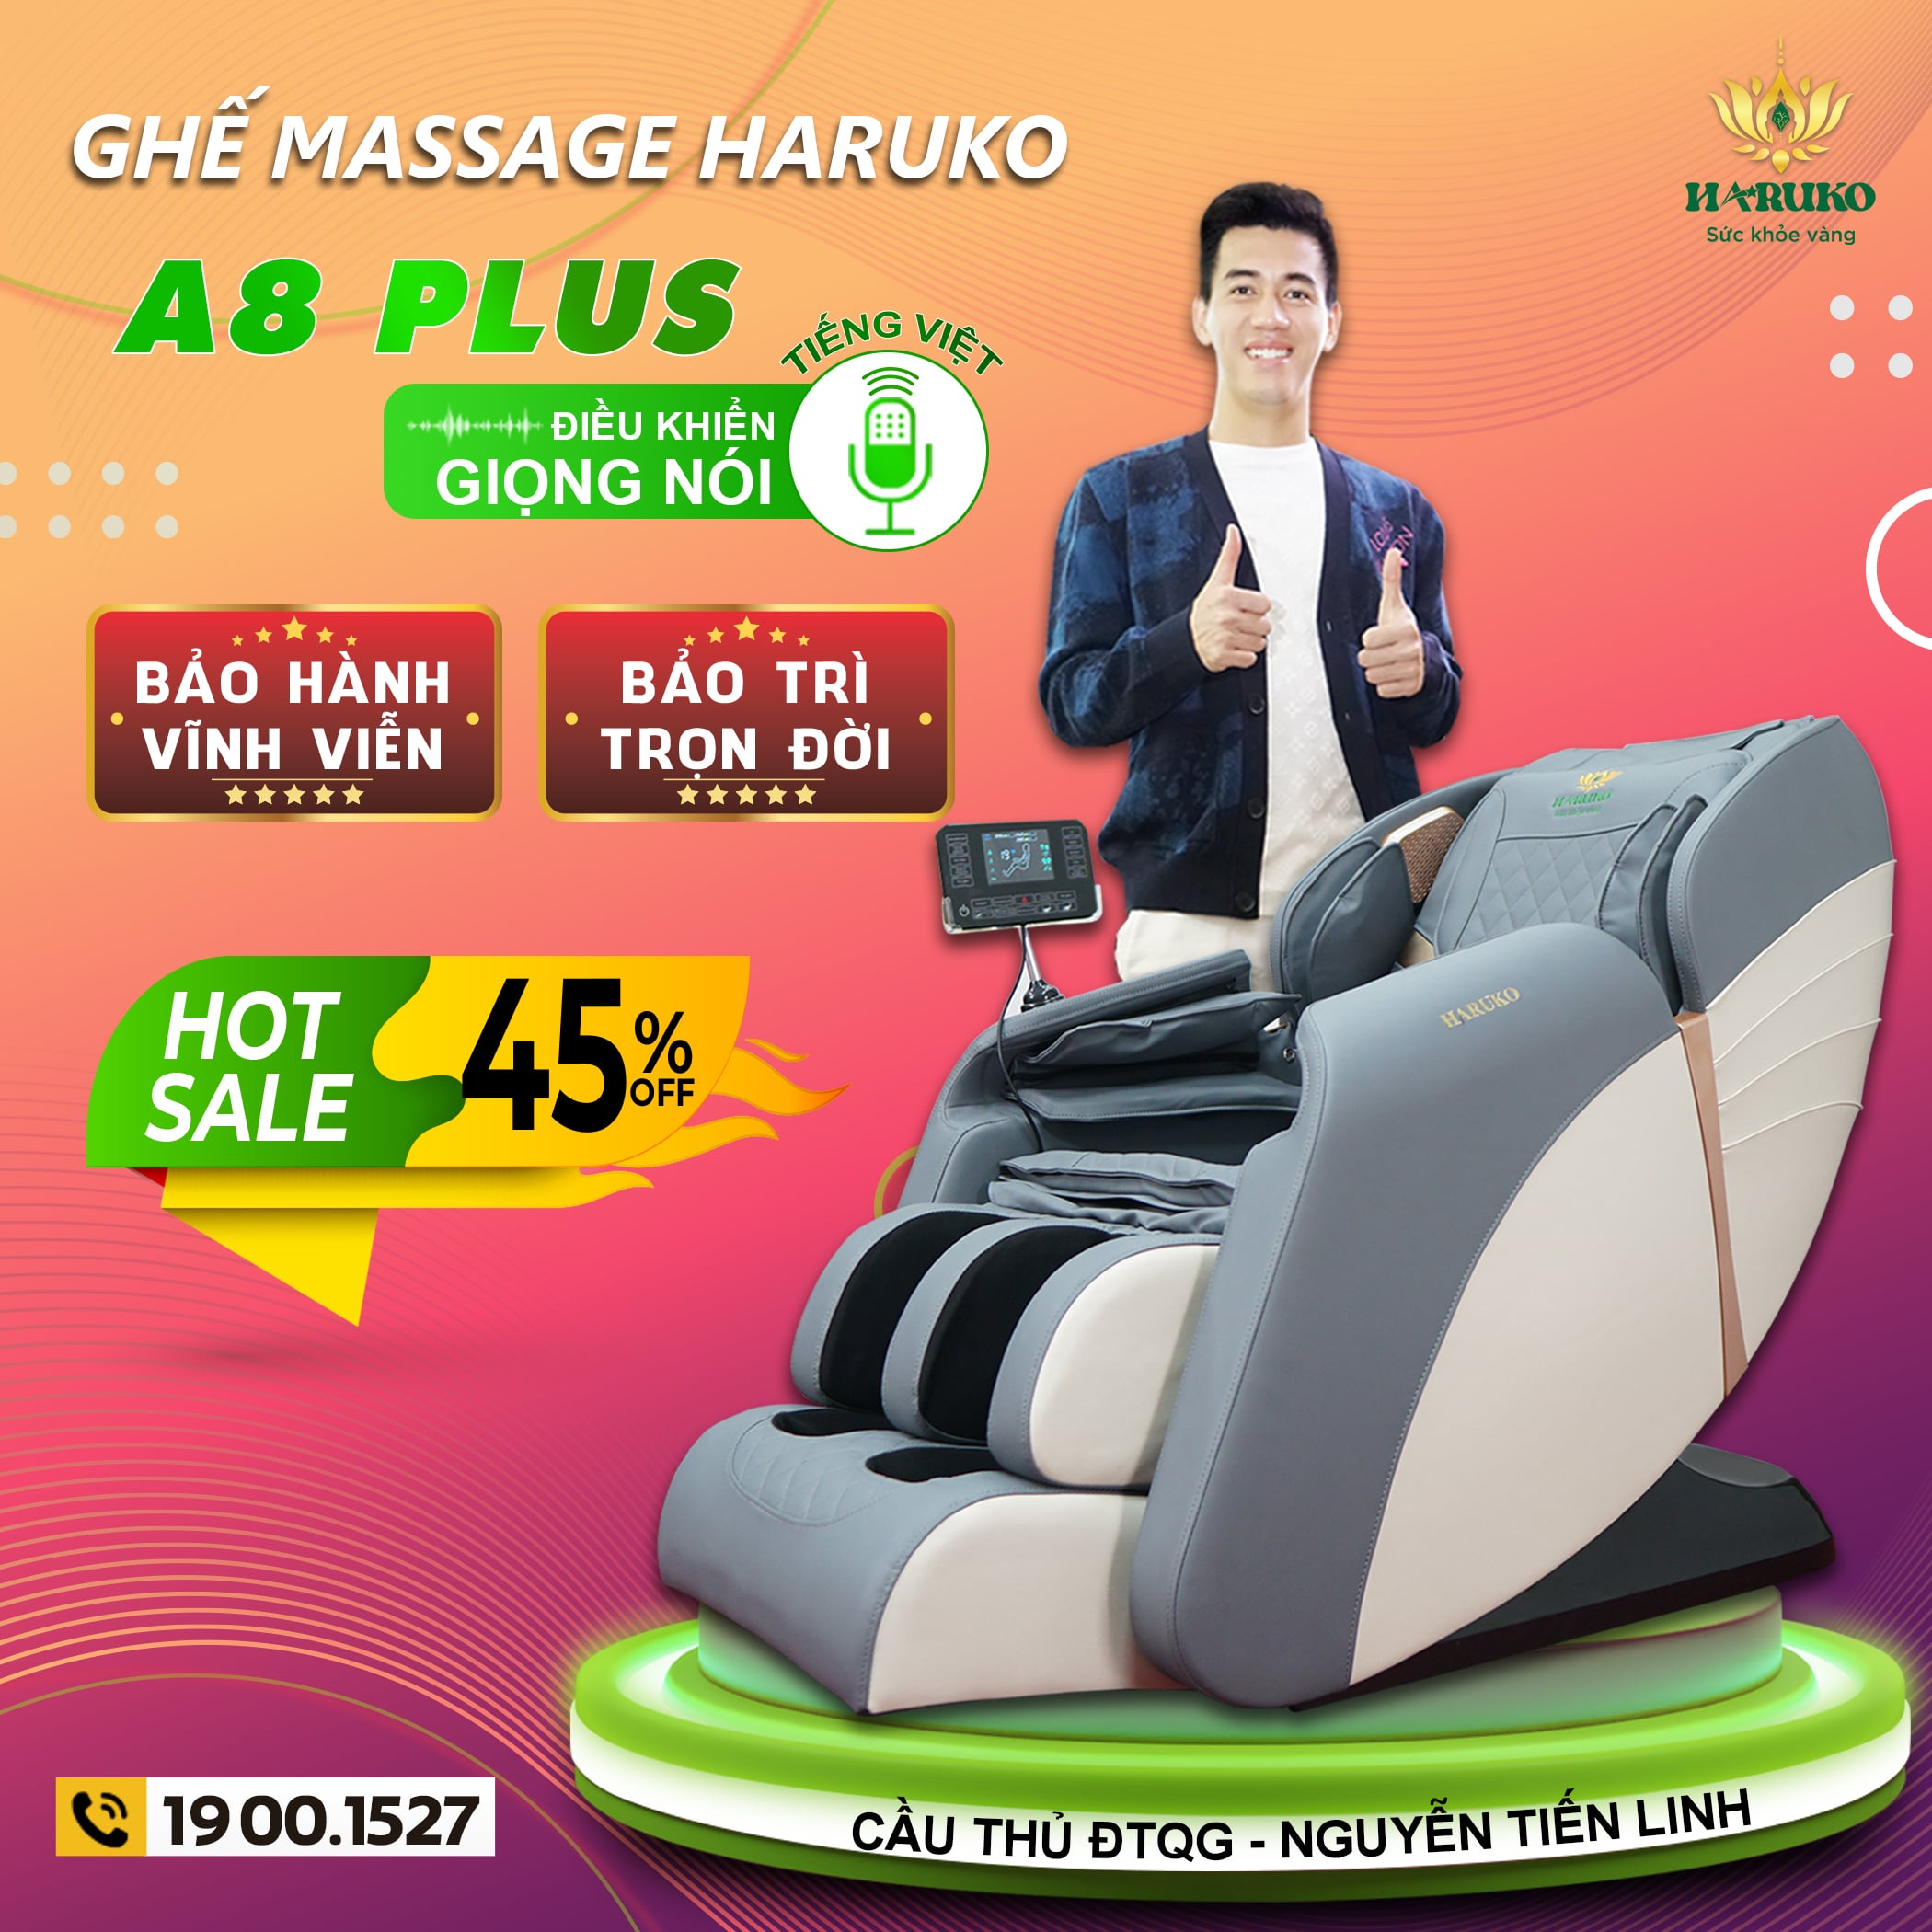 Ghế massage Haruko-A8 Plus sở hữu những tính năng hiện đại đi cùng với mức giá ưu đãi là sản phẩm vô cùng được yêu thích hiện nay